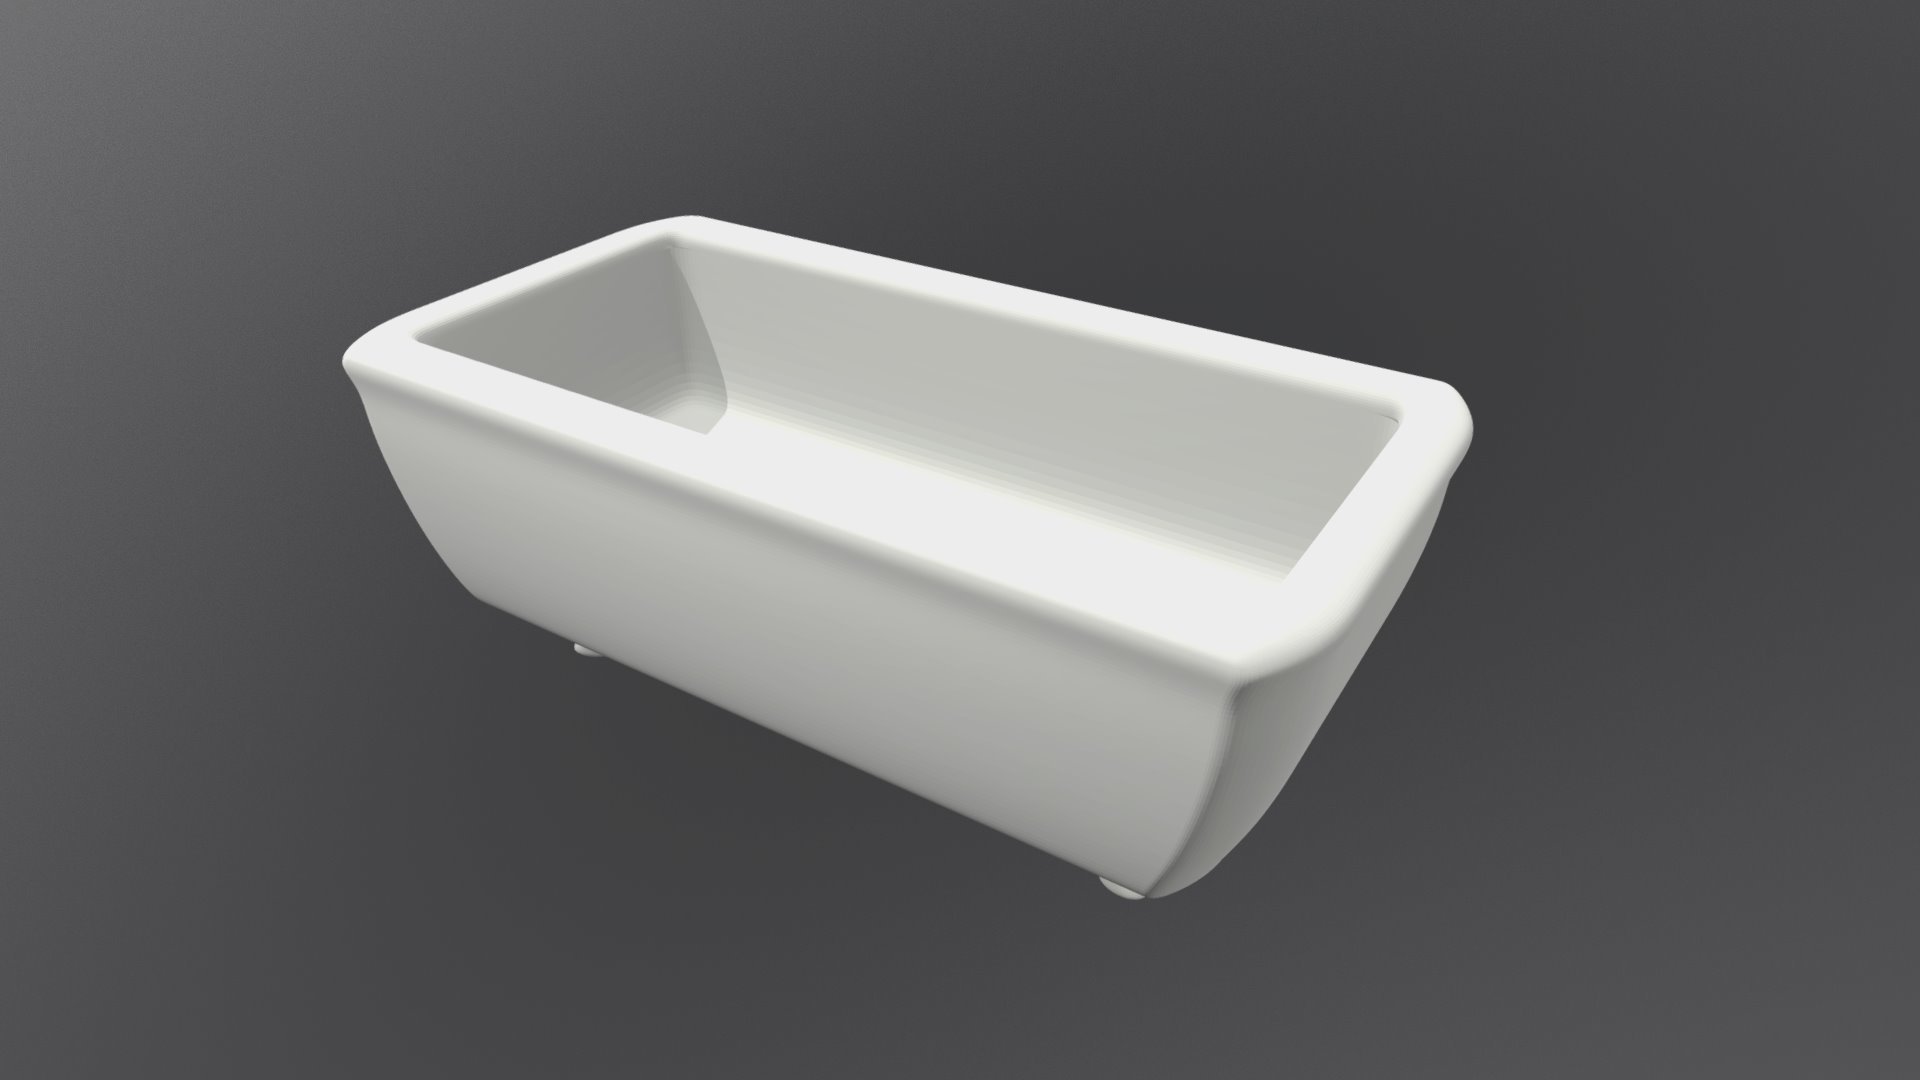 Tub - 3D model by Kyle Miller (@kyle.miller) [b7e4075] - Sketchfab